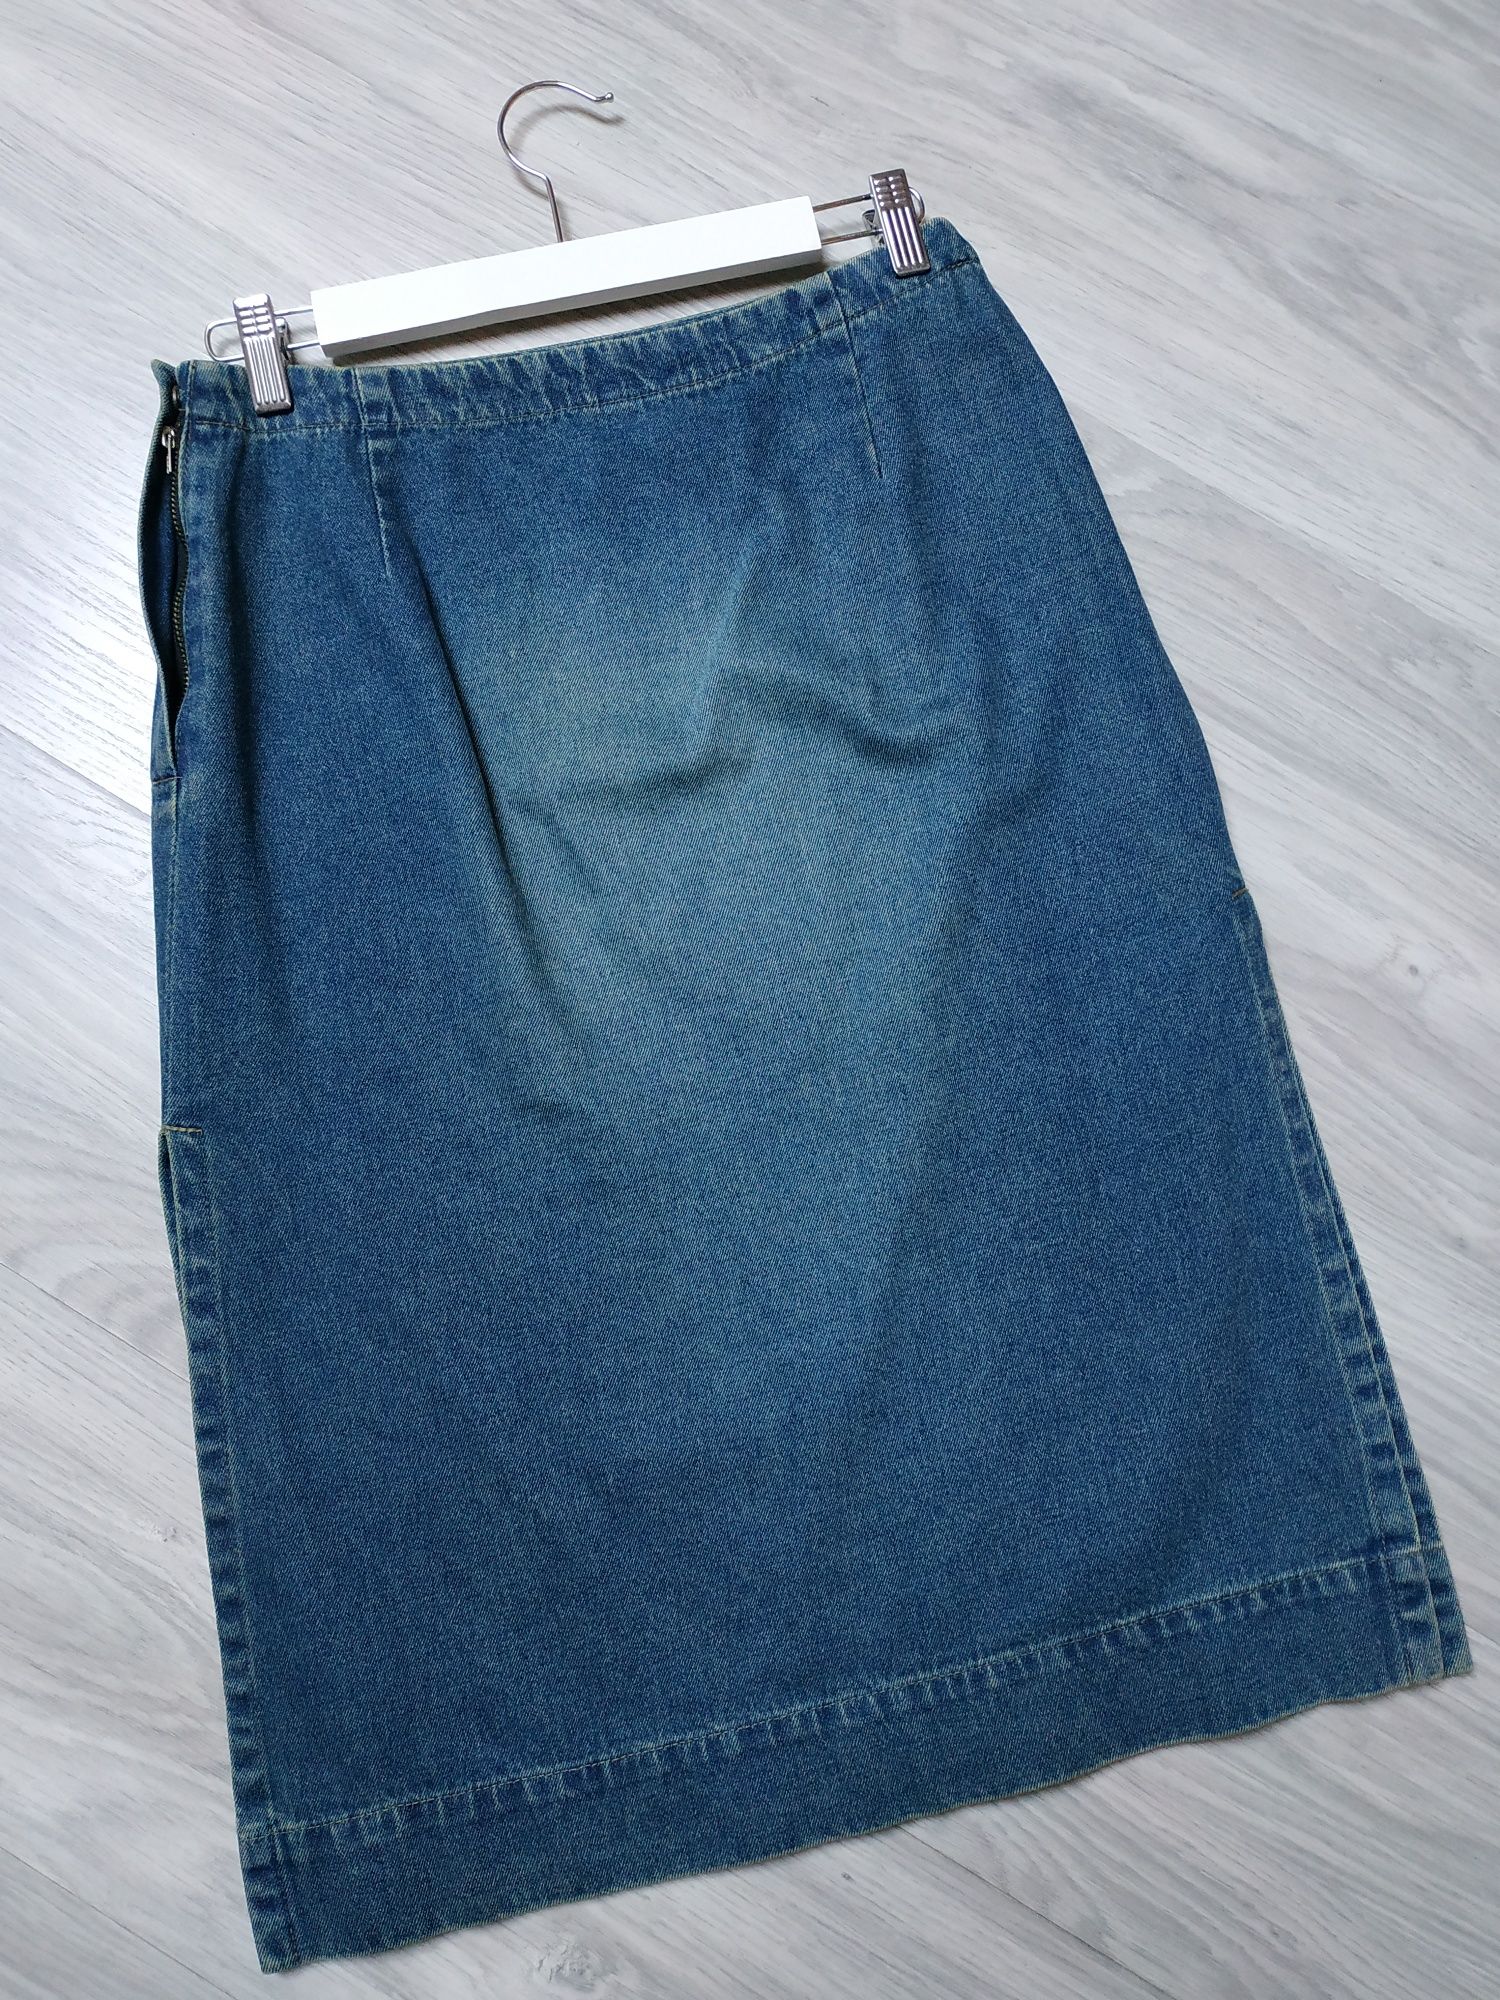 Spódnica jeansowa ołówkowa damska dżinsowa L